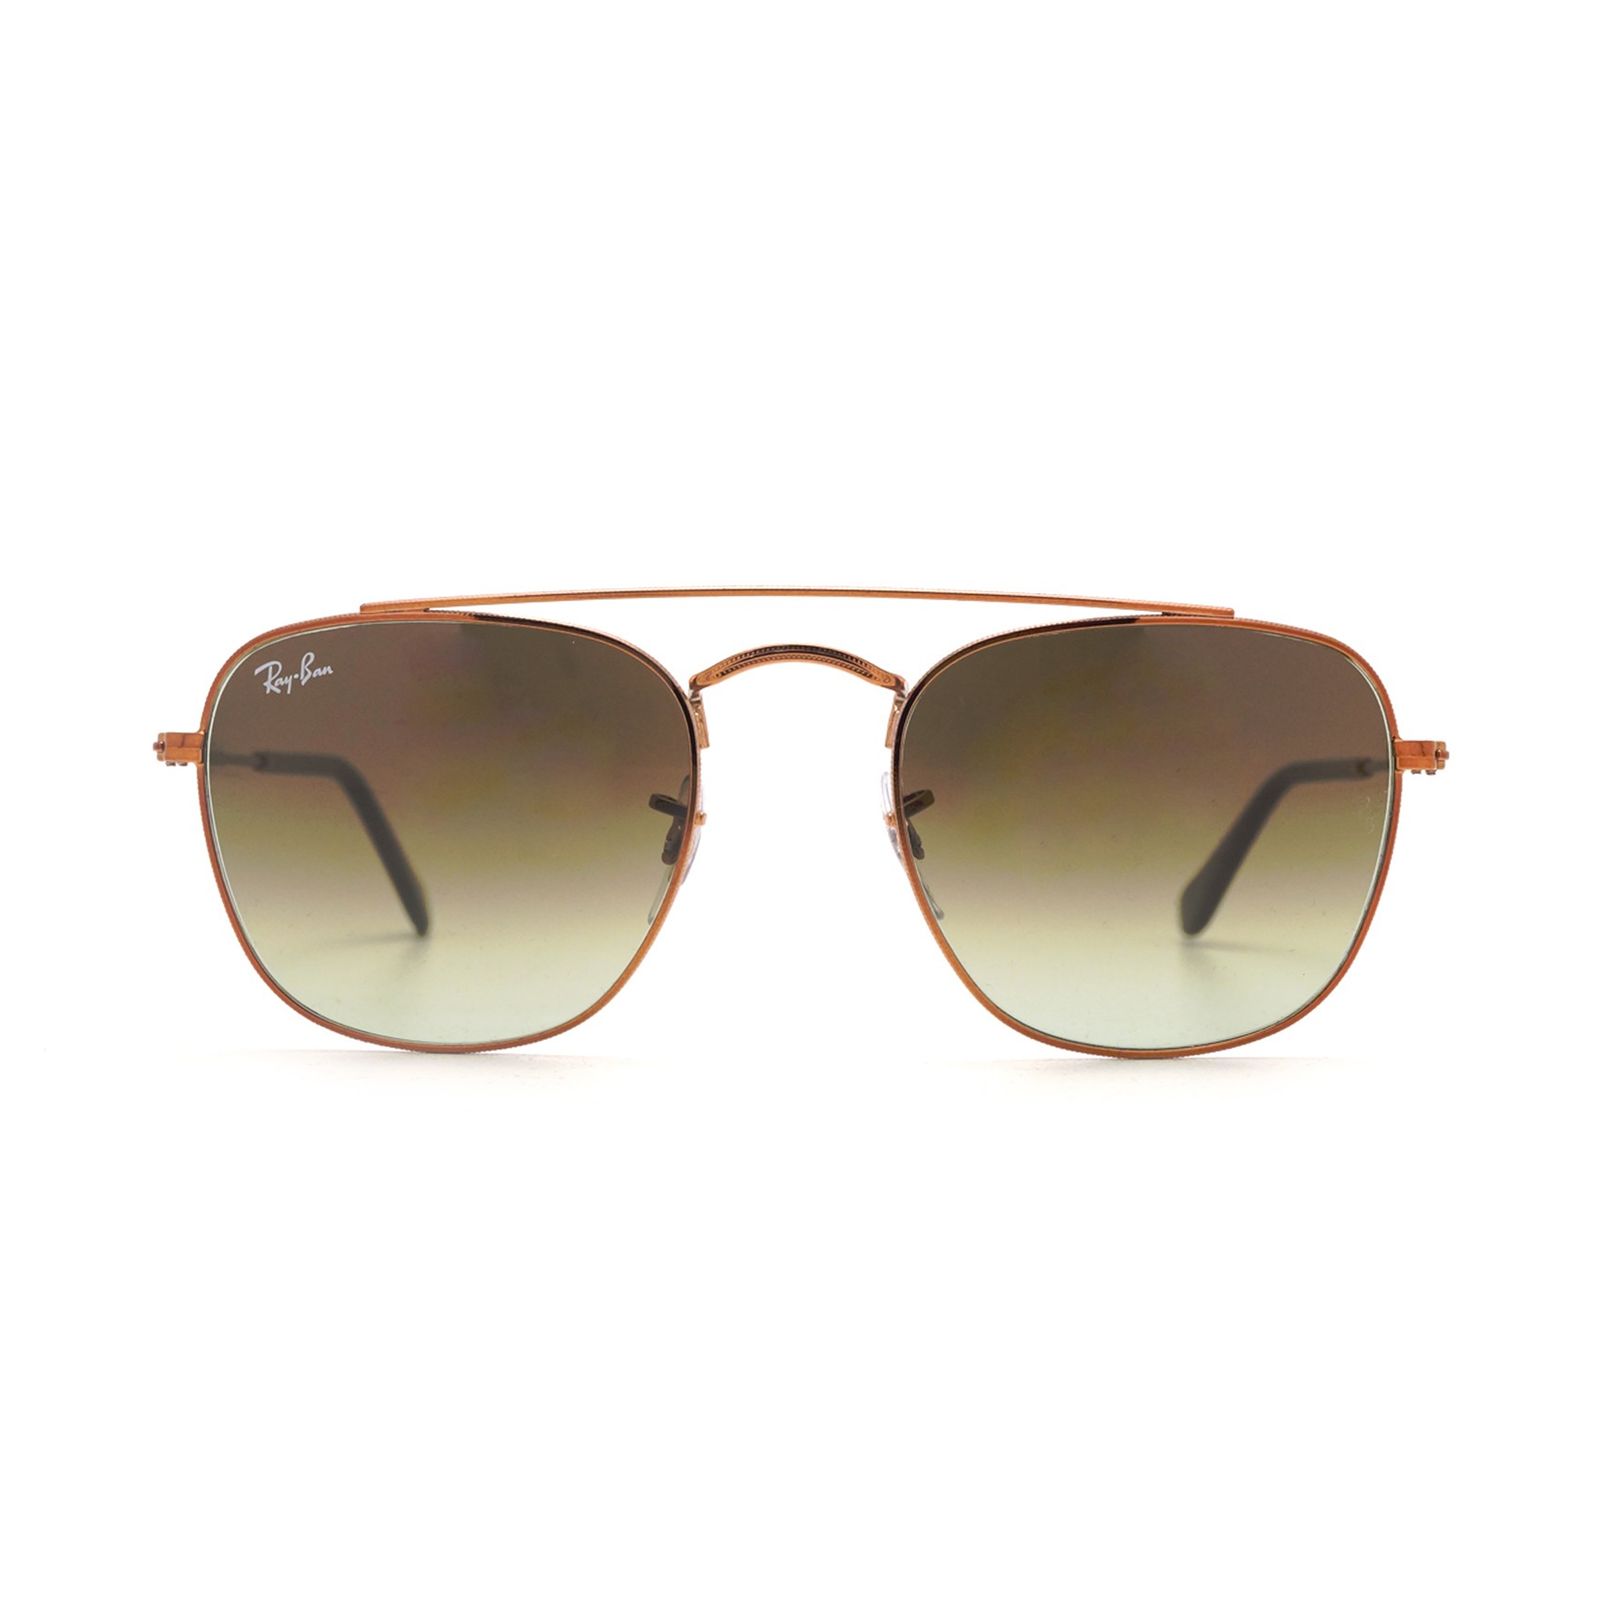 عینک آفتابی ری بن مدل 3557-9002/A6-51 - طلایی - 1